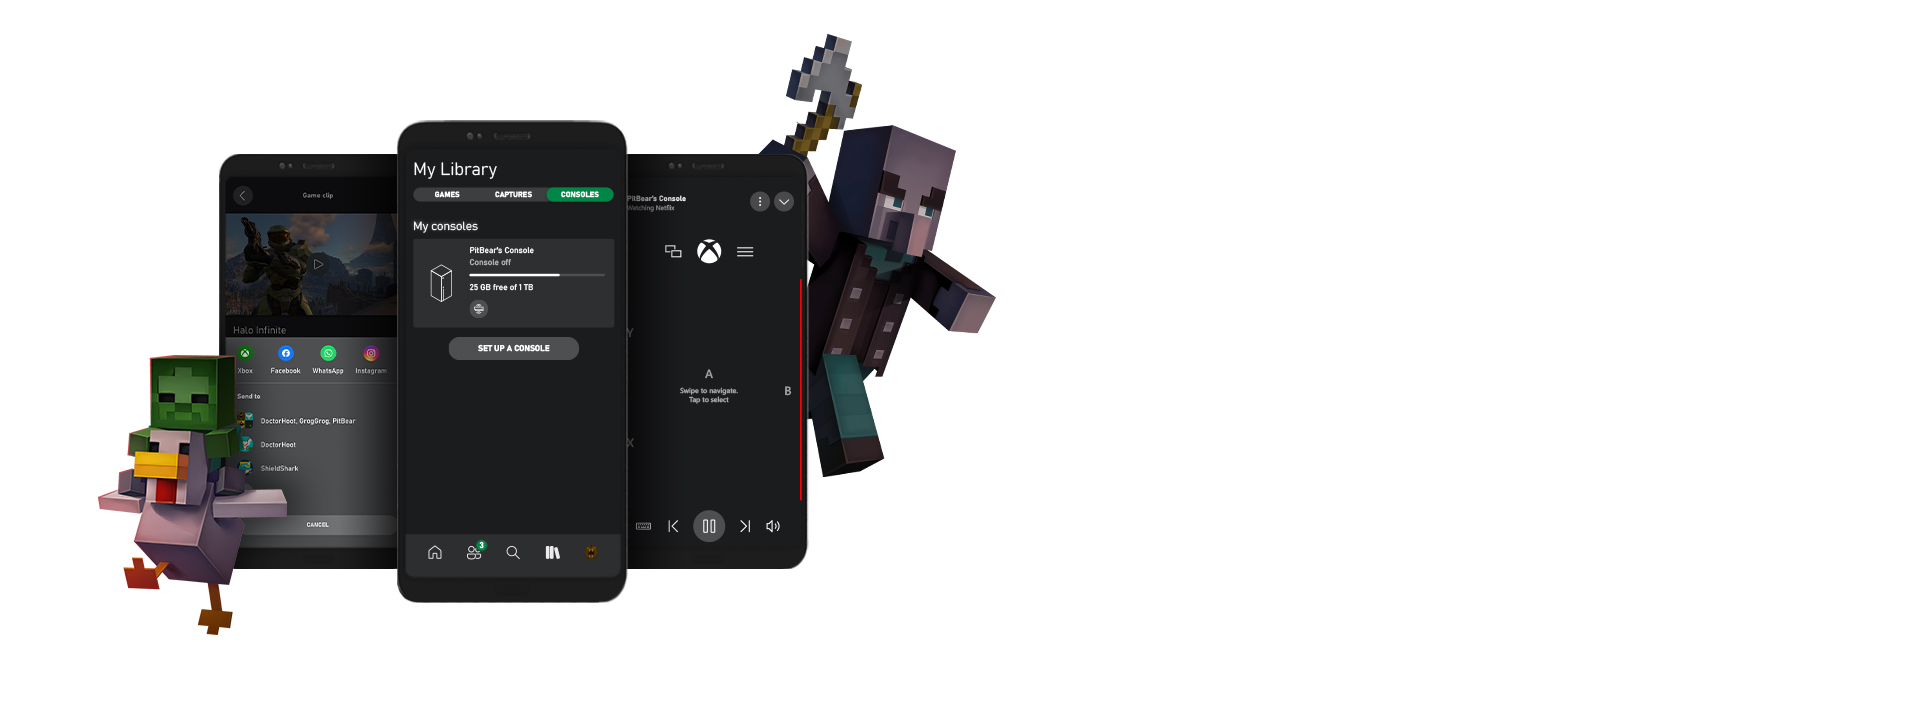 Os personagens do Minecraft cercam várias capturas de tela da interface do usuário do aplicativo Xbox para dispositivos móveis.